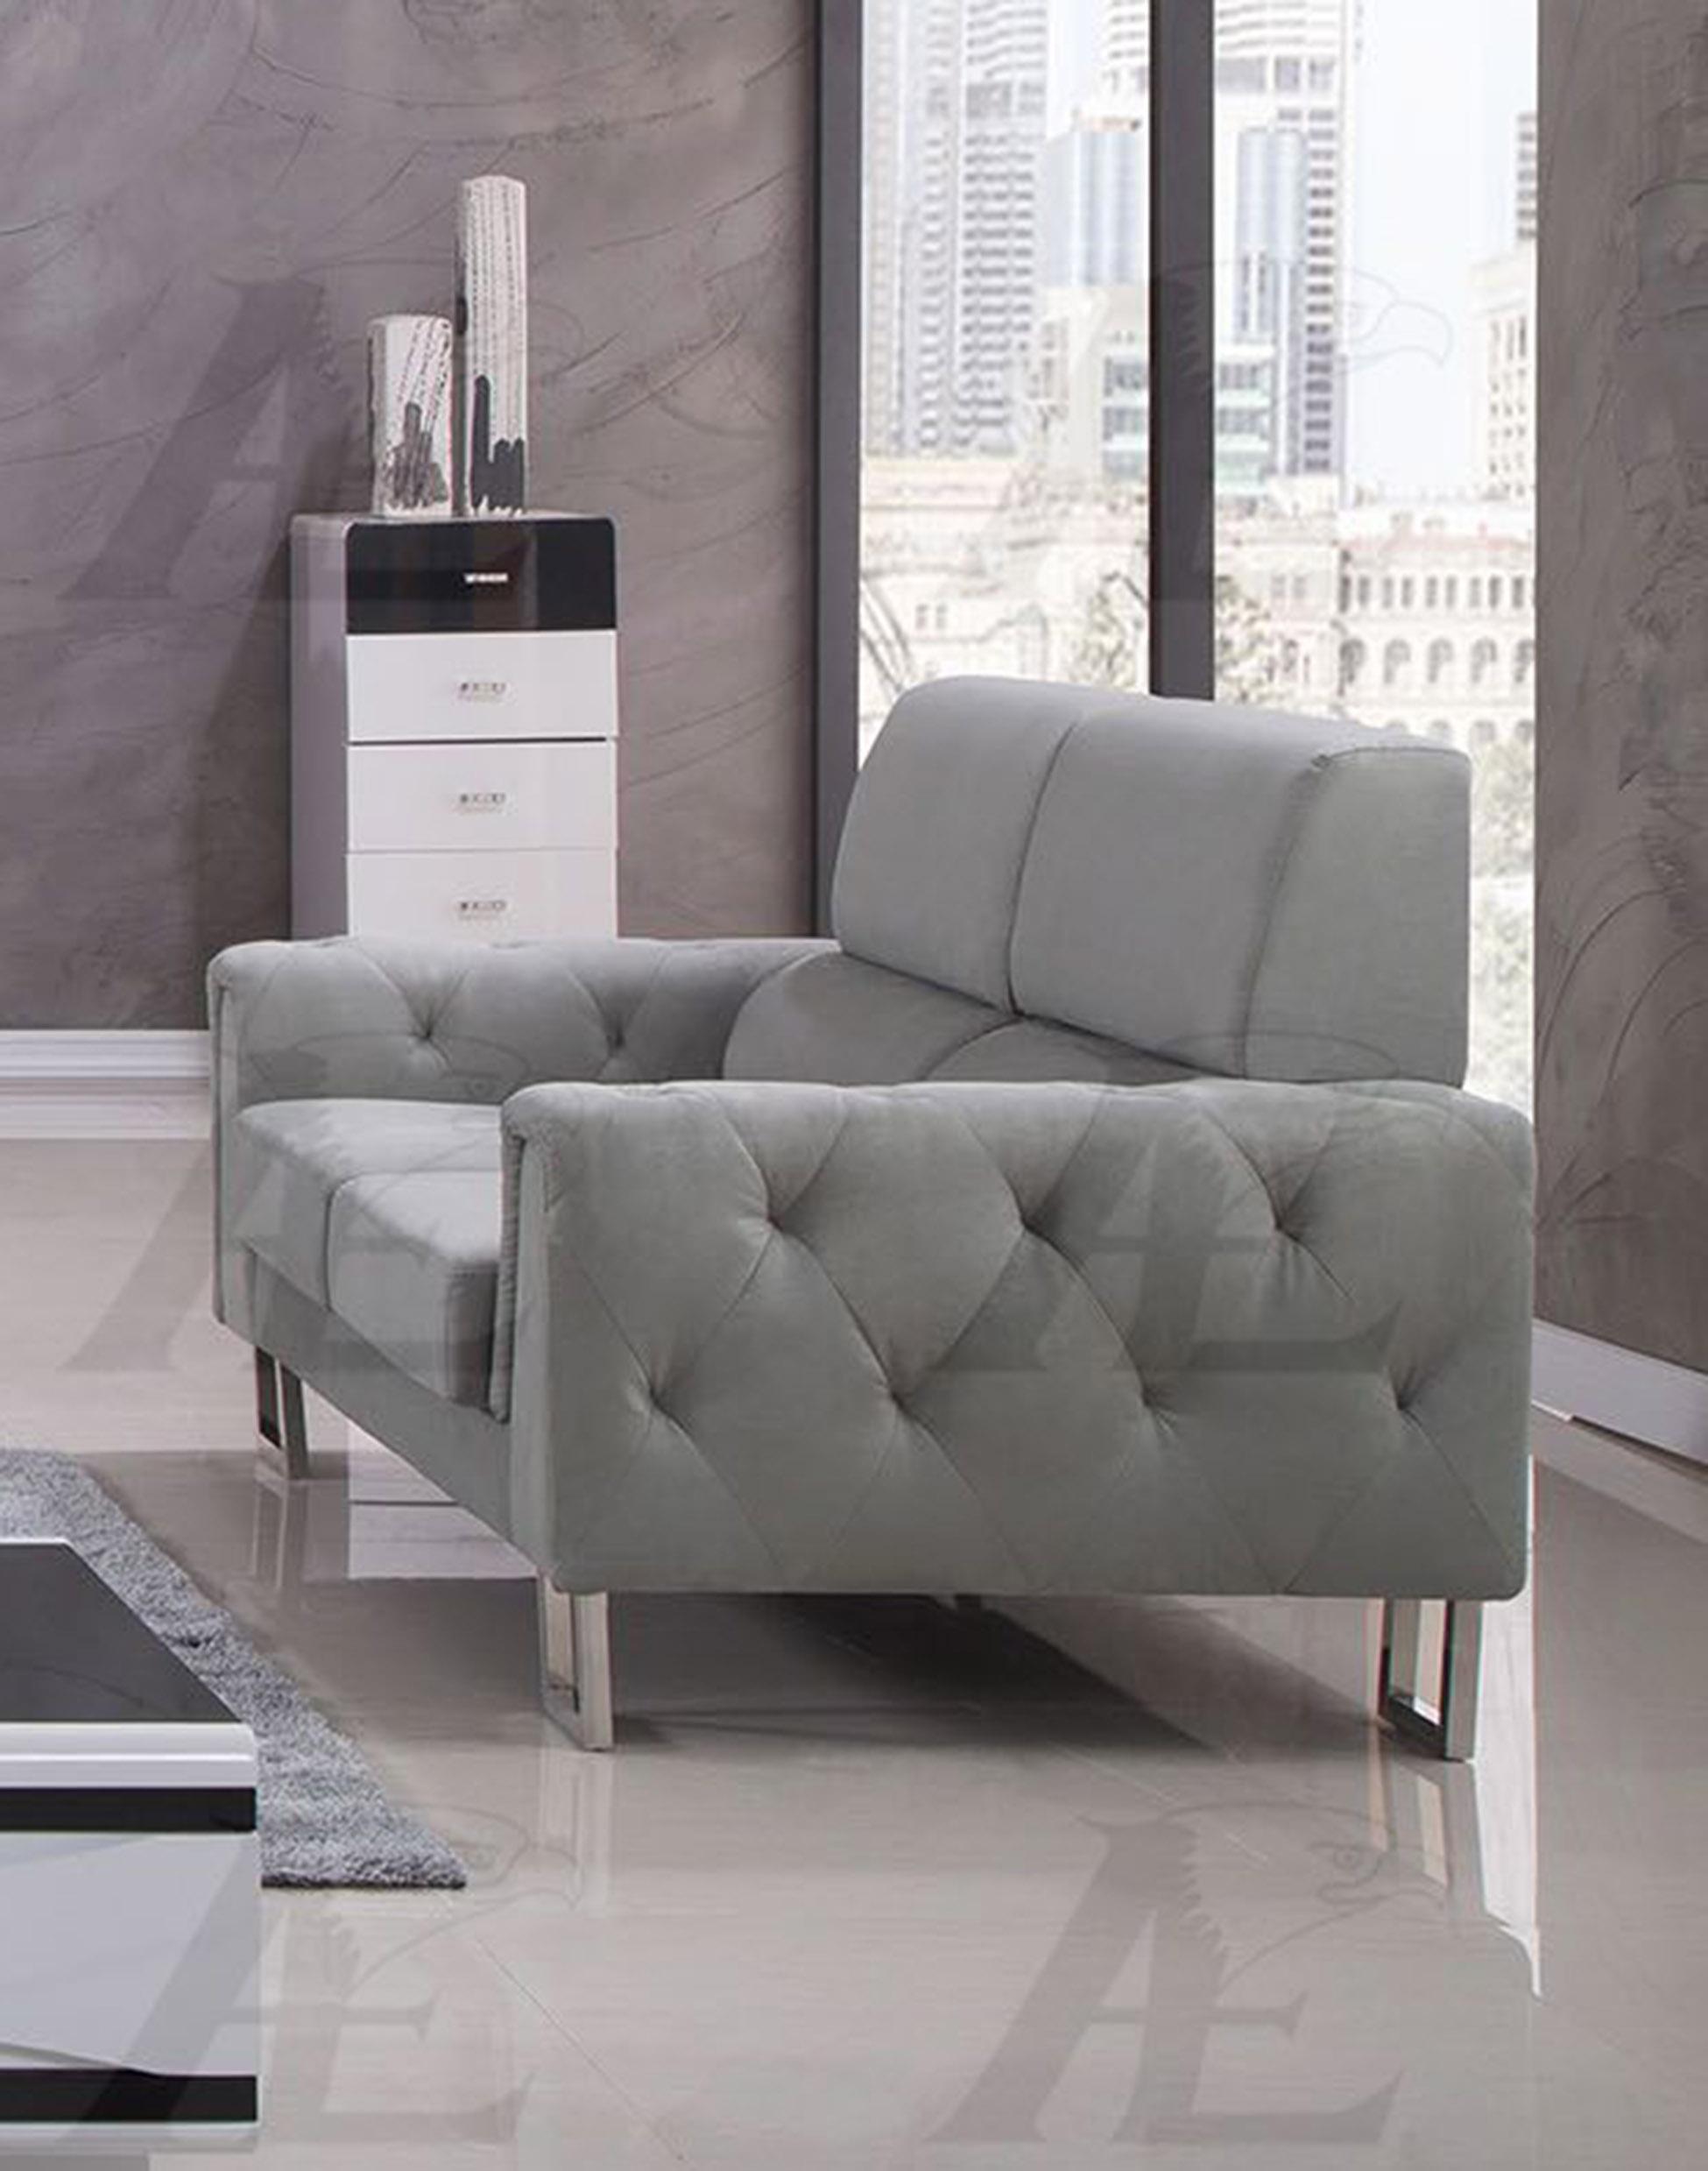 

    
American Eagle Furniture AE2369 Sofa Gray AE2369 -Sofa
